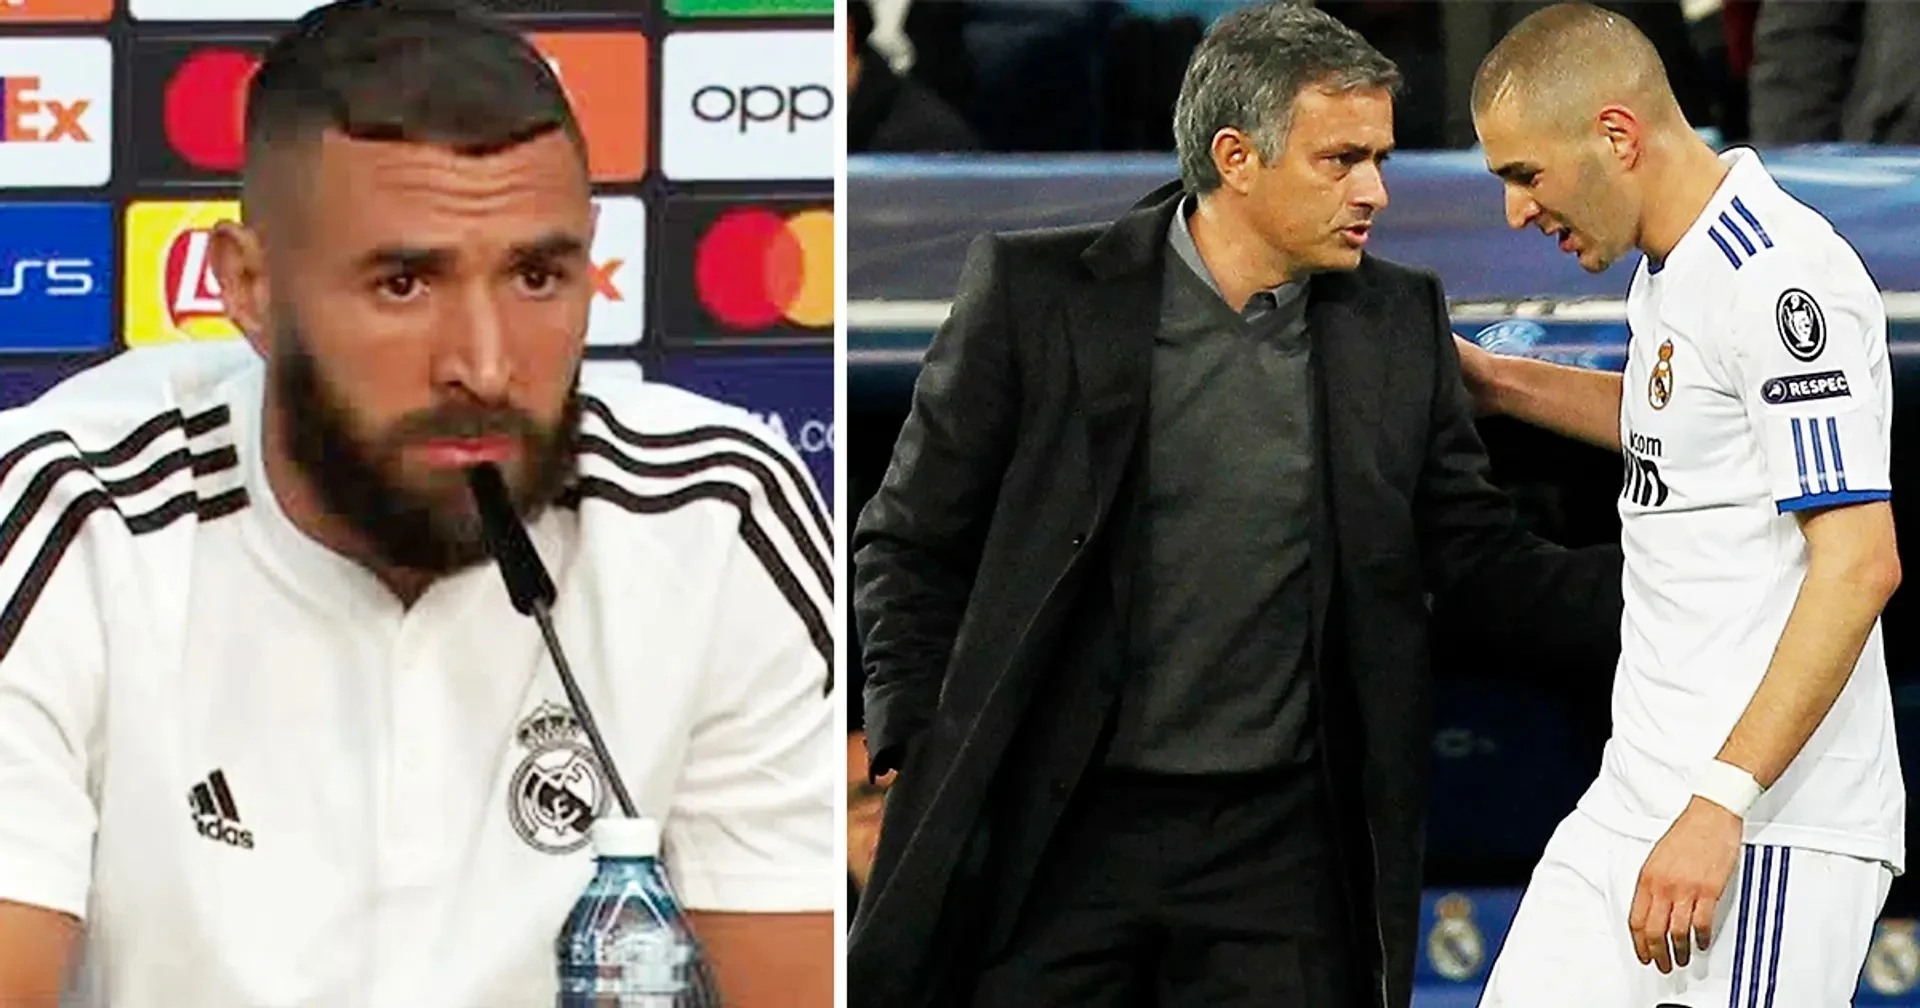 Benzema reveals details of bizarre meeting with Jose Mourinho